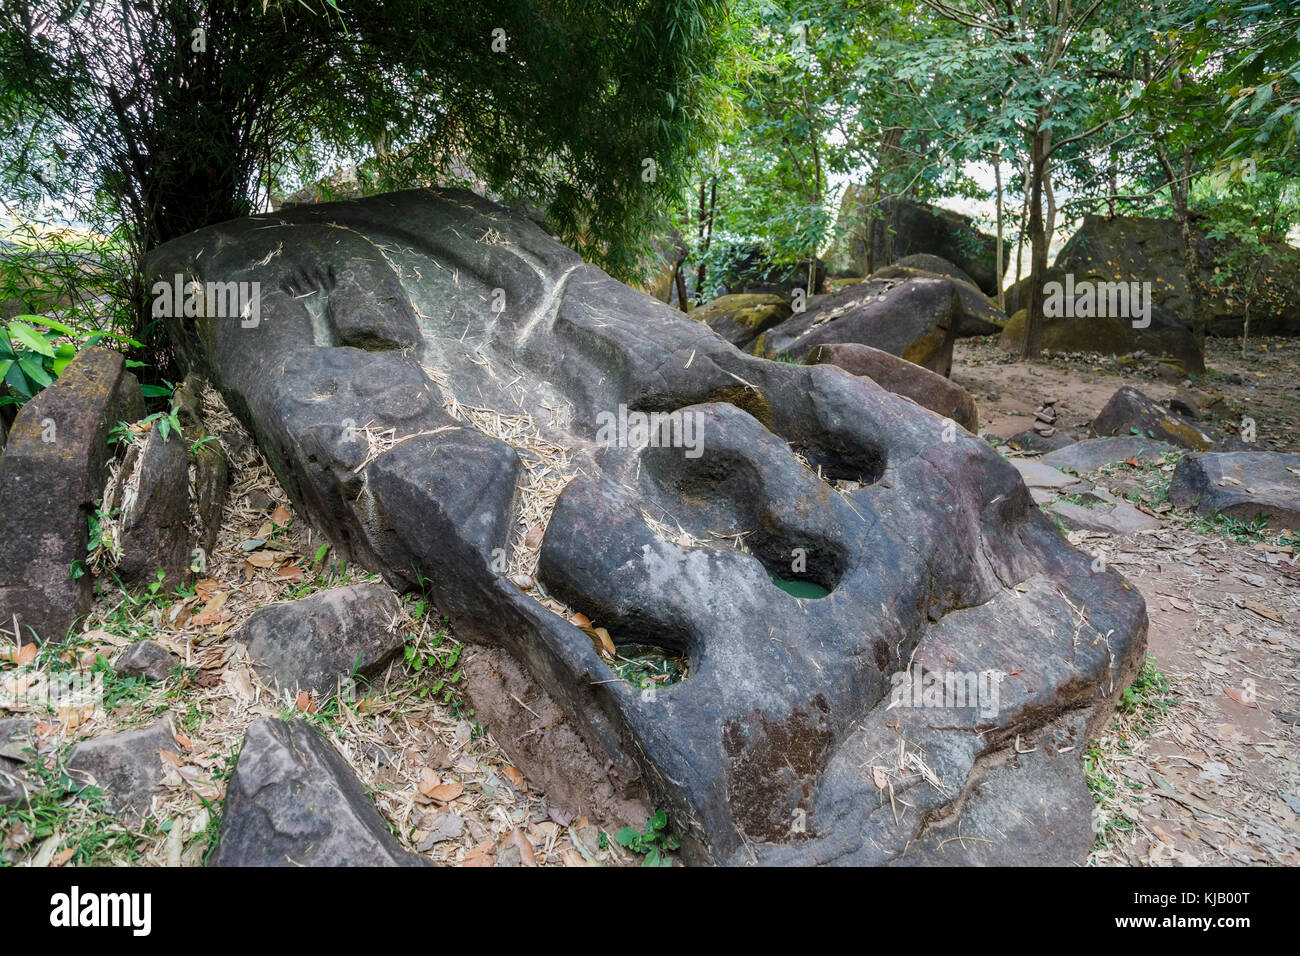 La pietra di coccodrillo presso le antiche rovine del pre-Angkorian Khmer (Indù ora) buddista di Tempio di Wat Phou, provincia di Champasak, Laos, sud-est asiatico Foto Stock